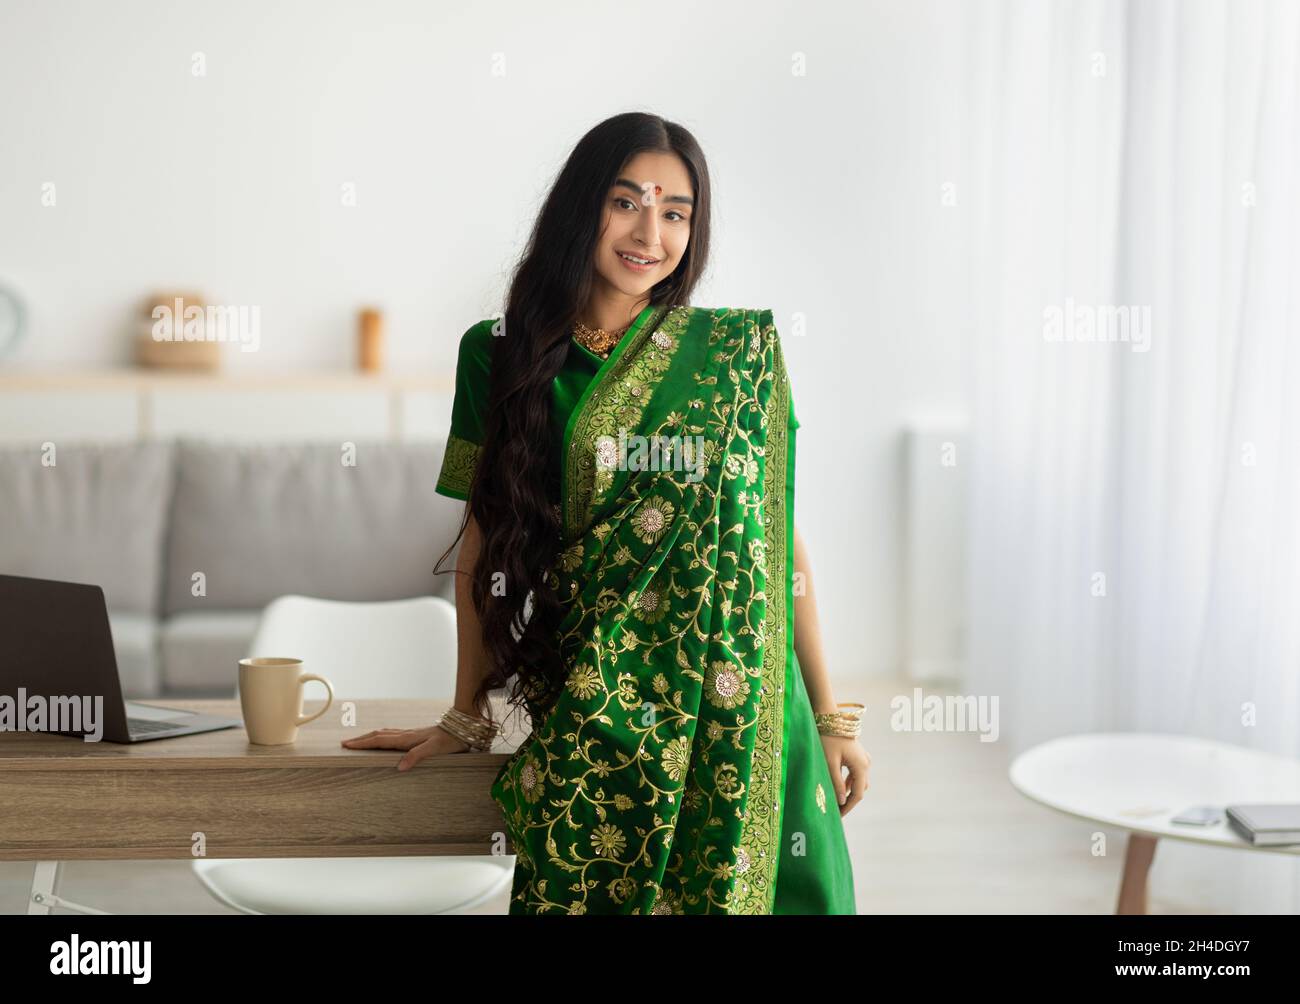 Portrait de la belle dame indienne en robe verte sari s'appuyant sur la table et souriant à l'appareil photo, à l'intérieur Banque D'Images